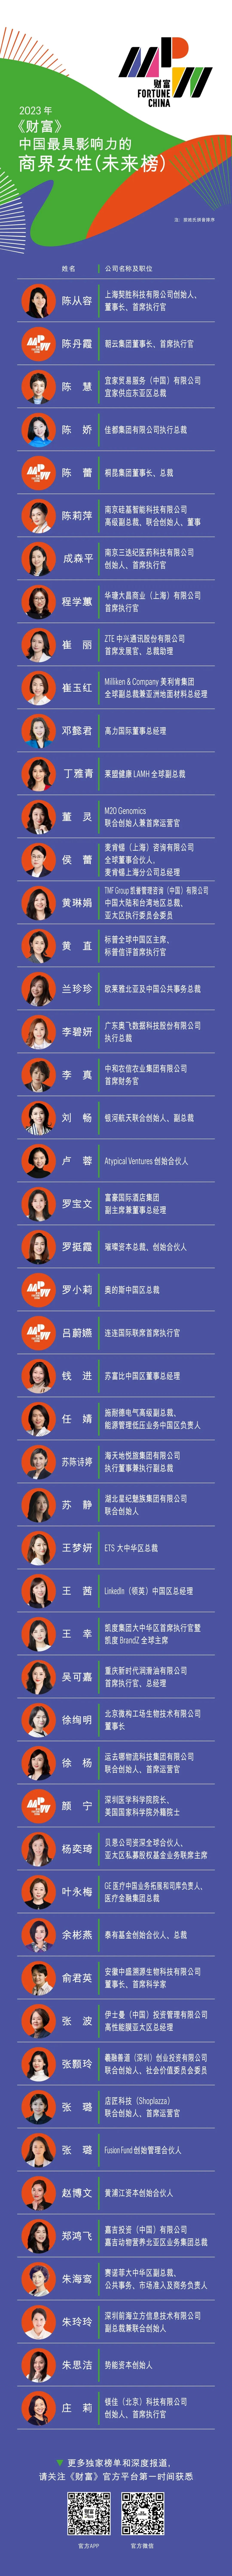 《财富》2023中国最具影响力的商界女性榜 立讯精密董事长王来春登榜首 潮商资讯 图2张